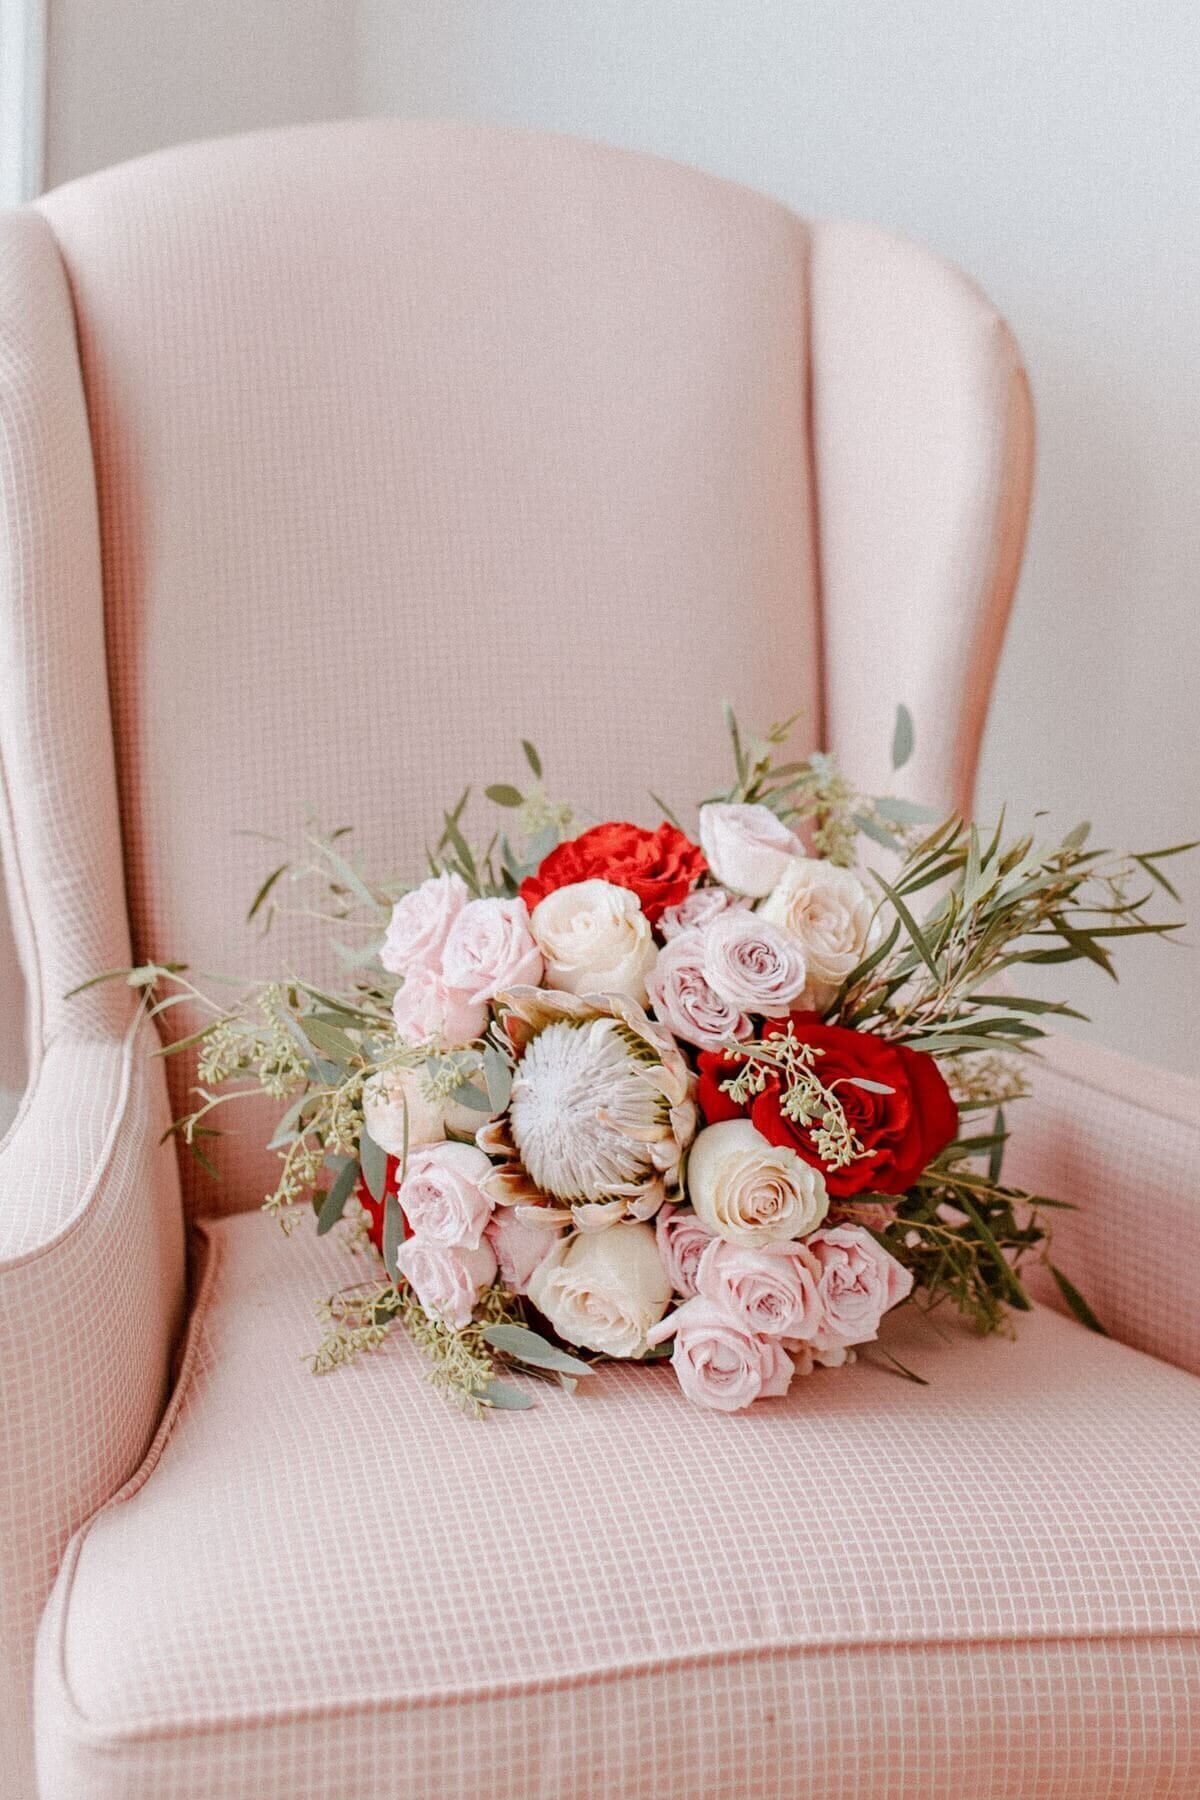 2-kara-loryn-photography-wedding-bridal-bouquet